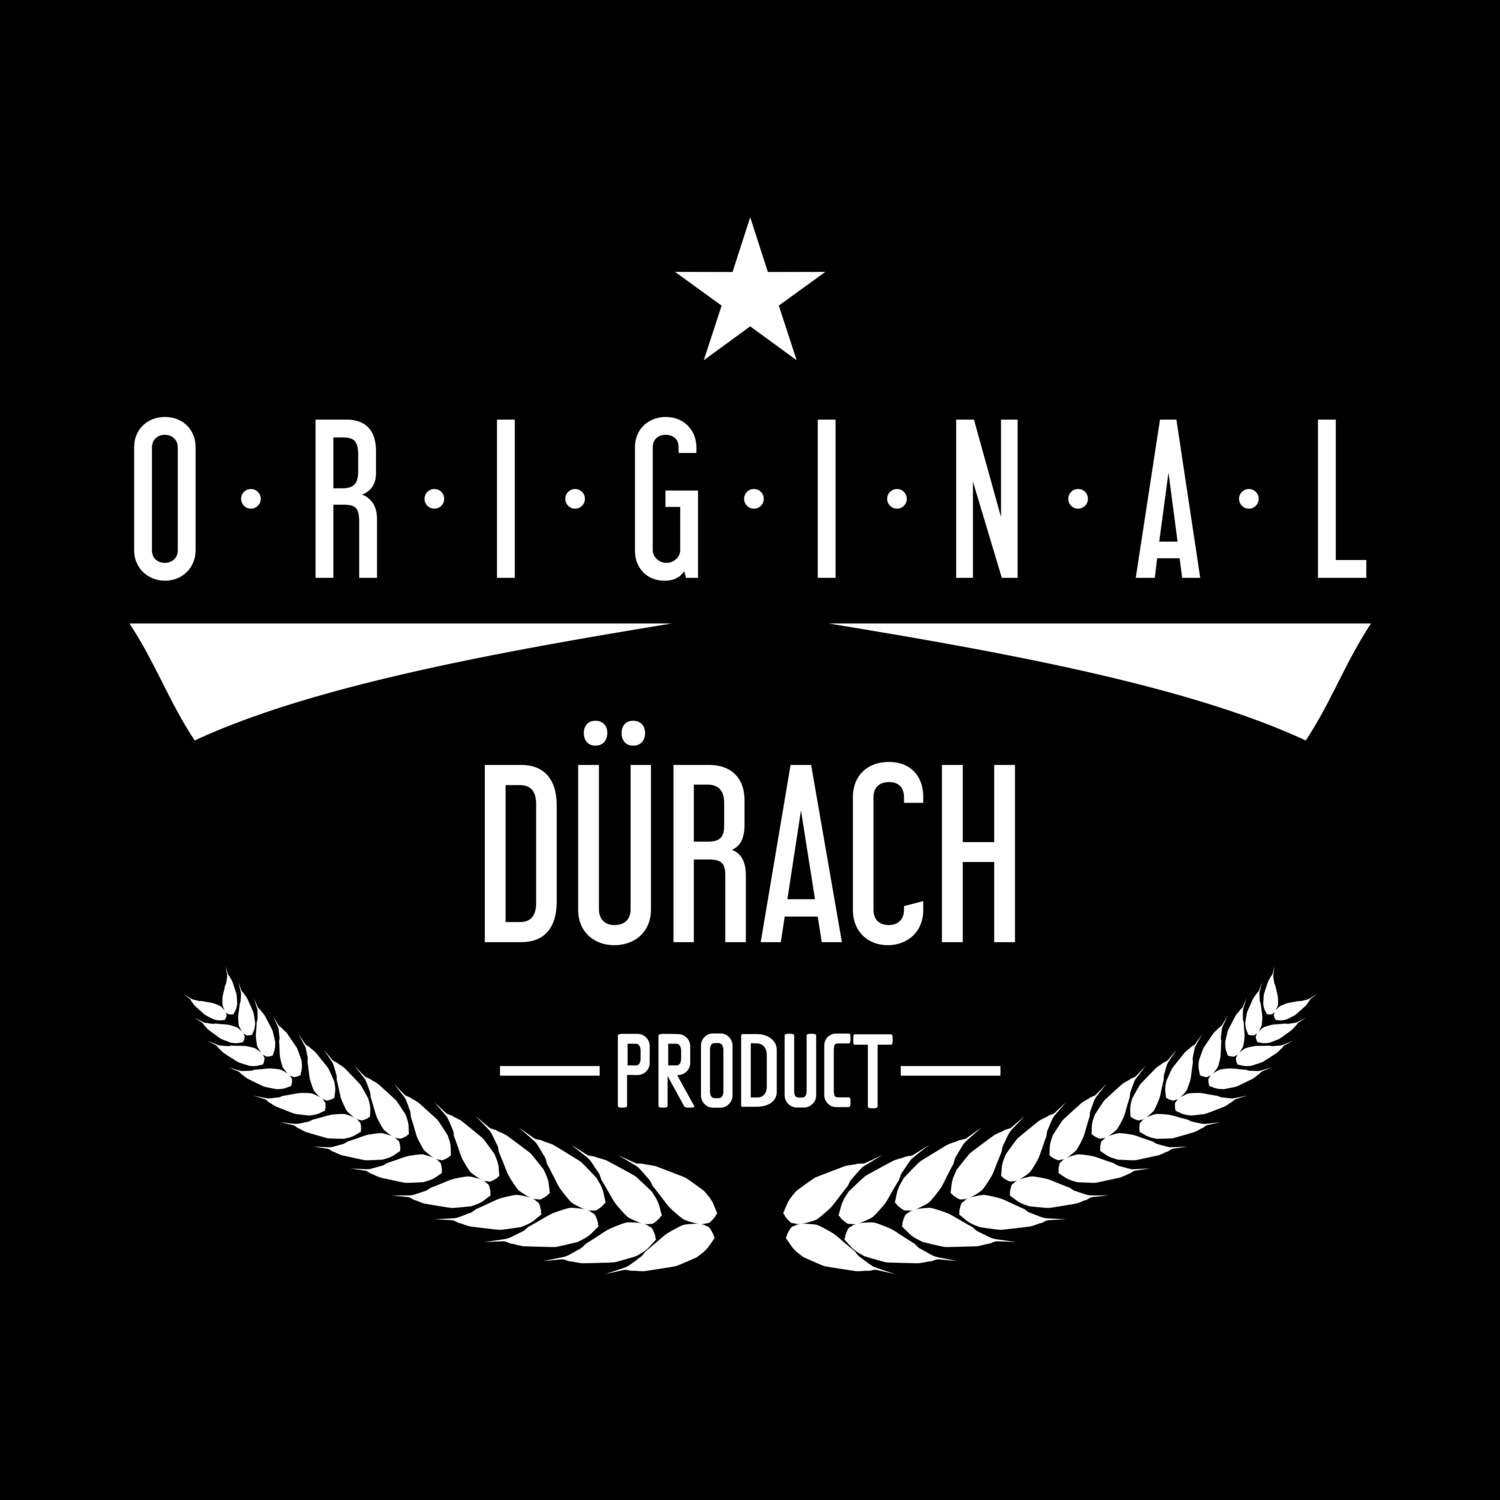 Dürach T-Shirt »Original Product«